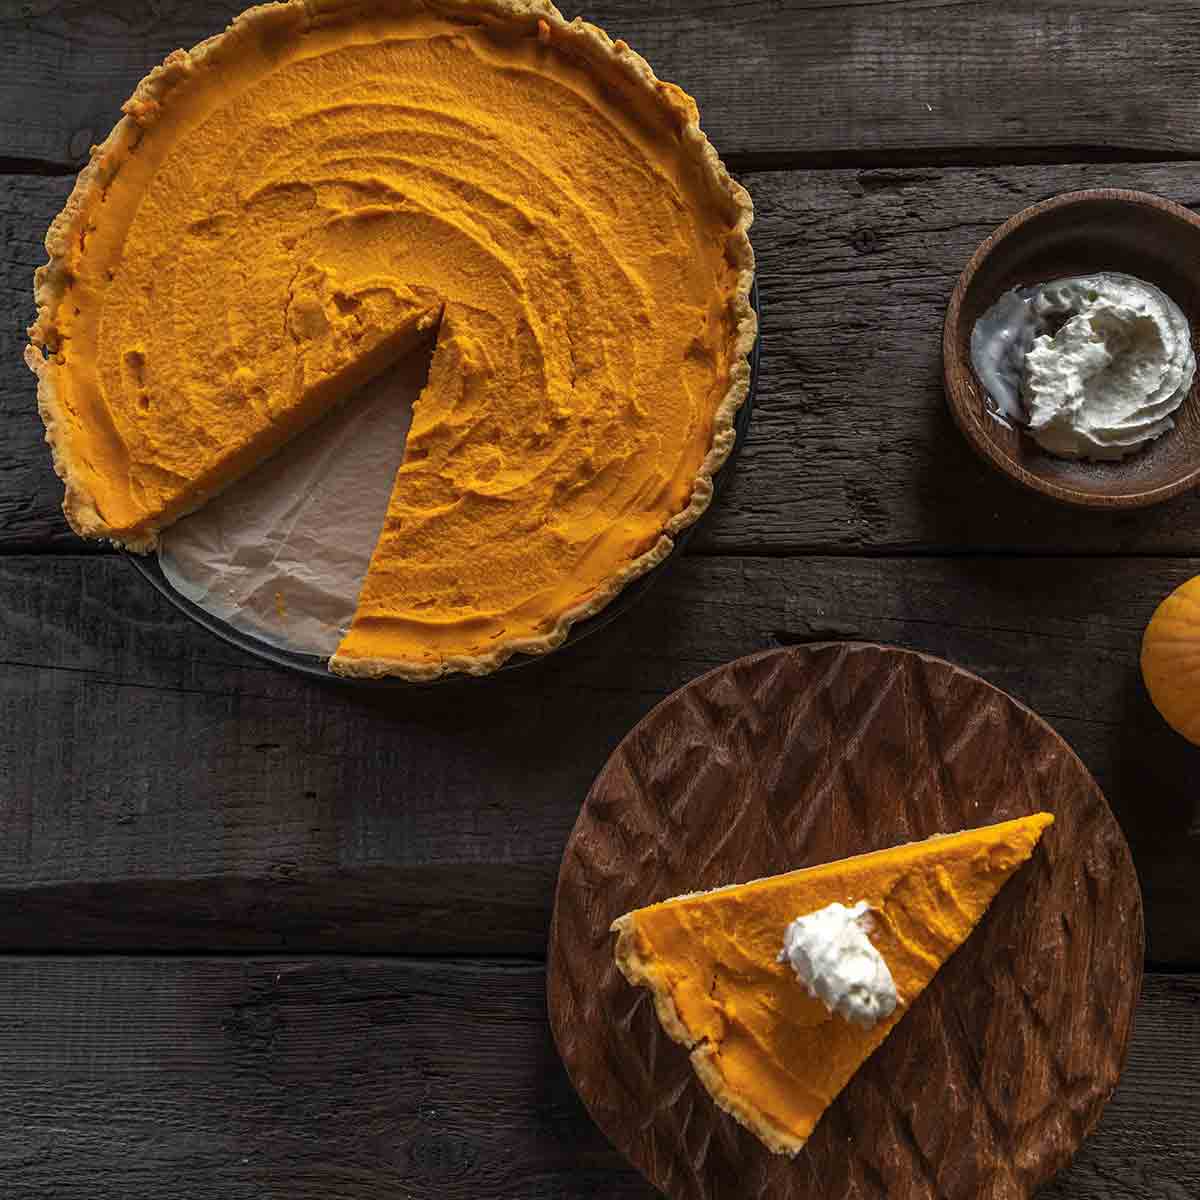 Is Pumpkin Pie Vegan Image Of Pumkpin Pie On Table